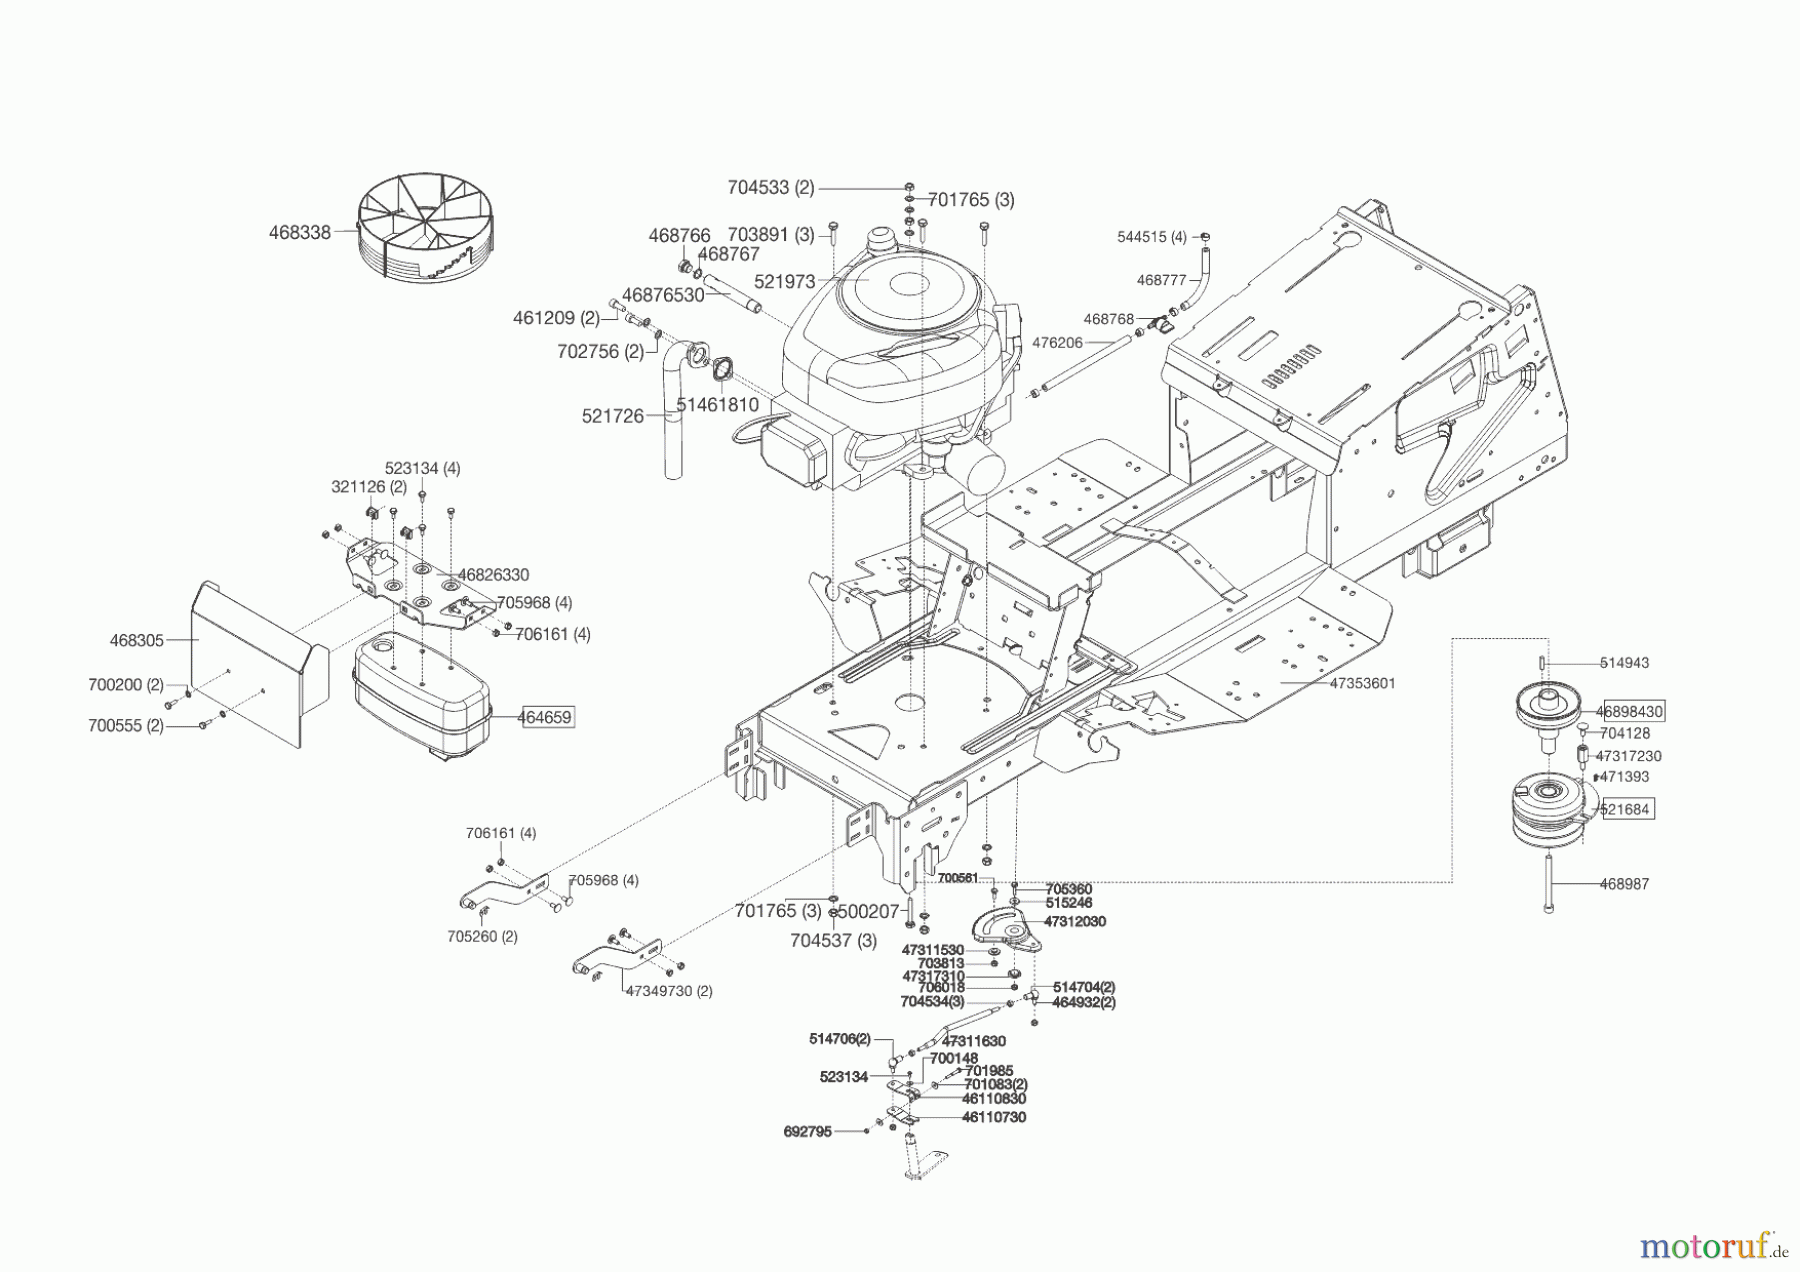  Powerline Gartentechnik Rasentraktor T 18-95.4 HD  ab 09/2016 Seite 2